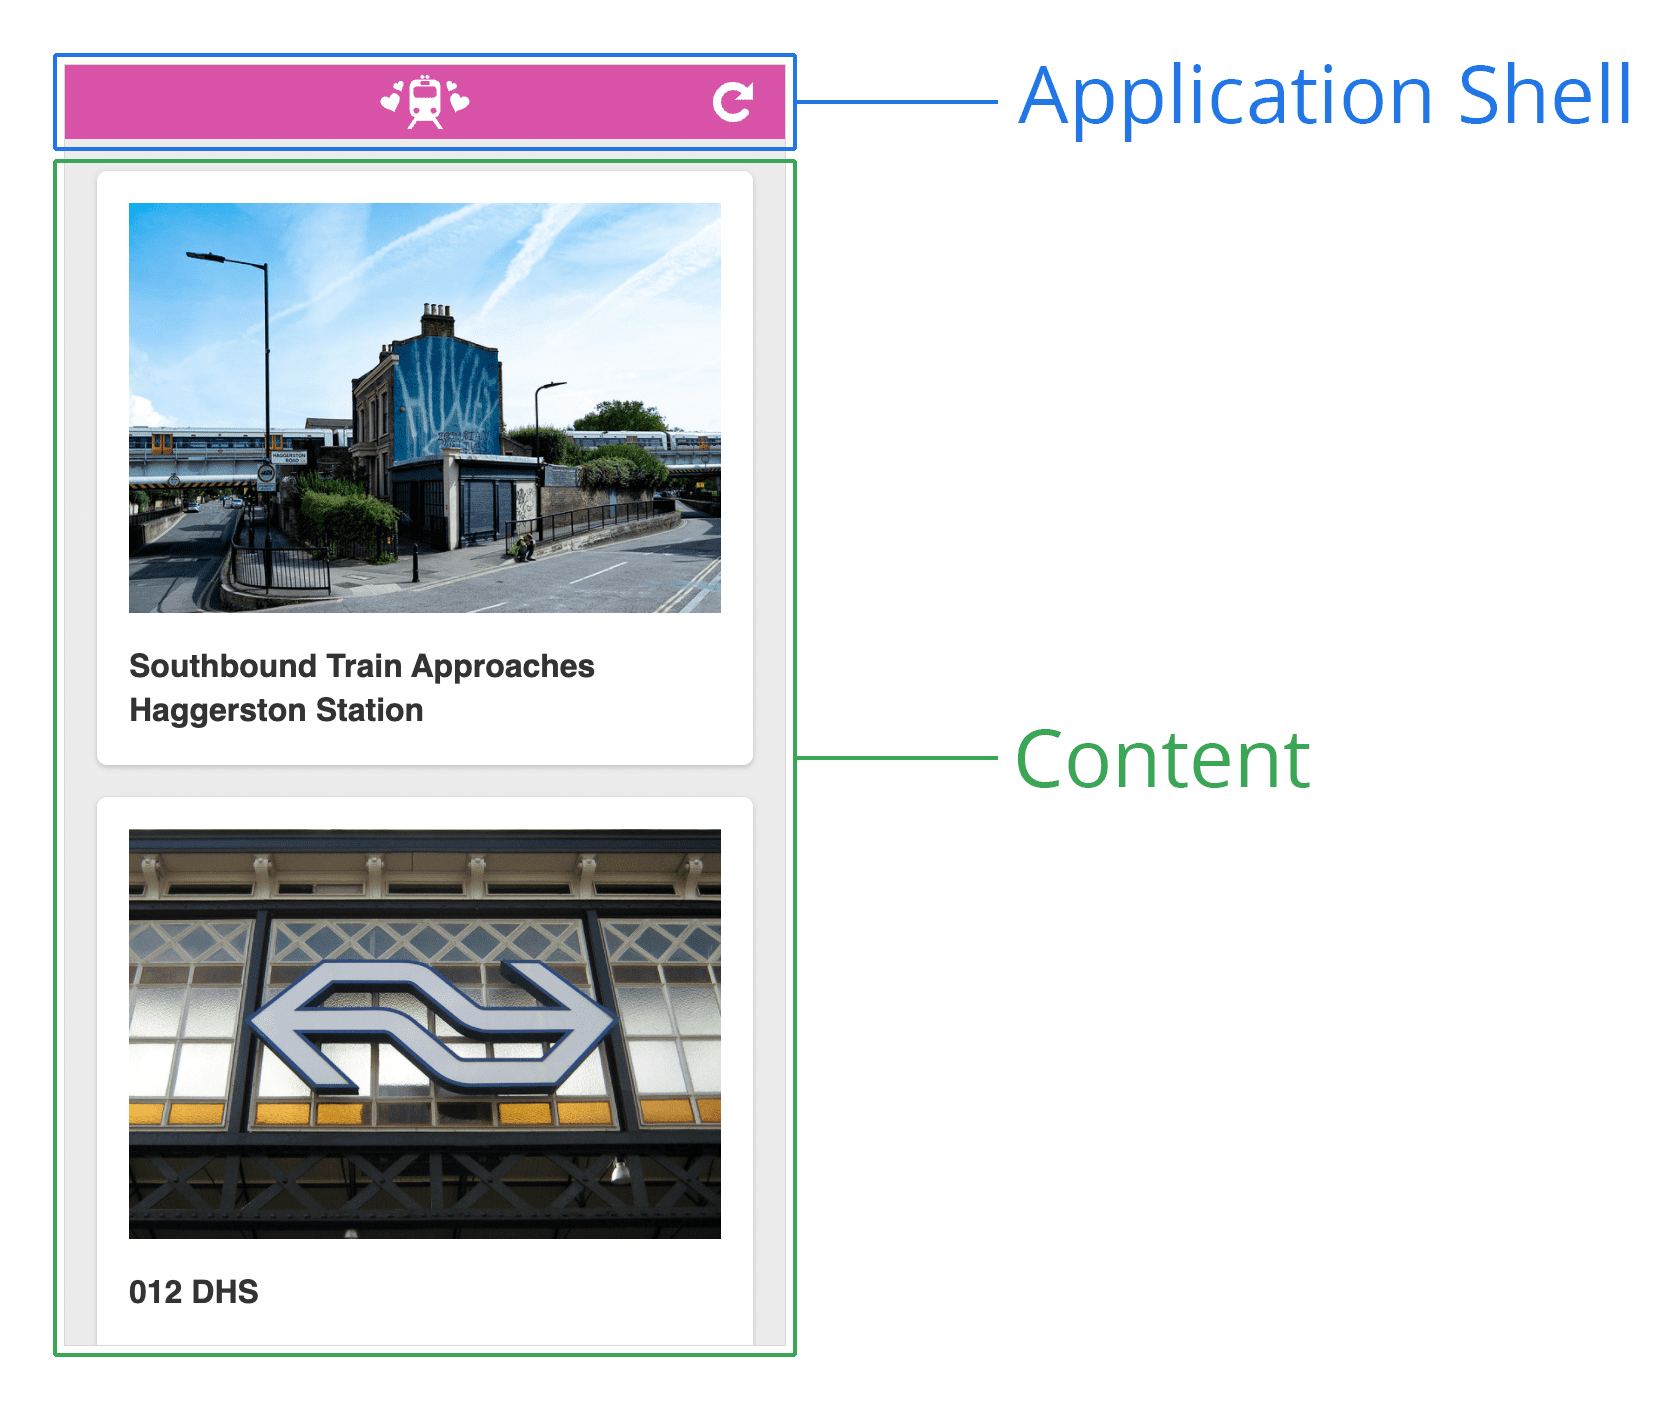 应用 Shell 示意图。所见网页的屏幕截图，顶部是页眉，底部是内容区域。标头标记为“Application Shell”，而底部则标记为“Content”。